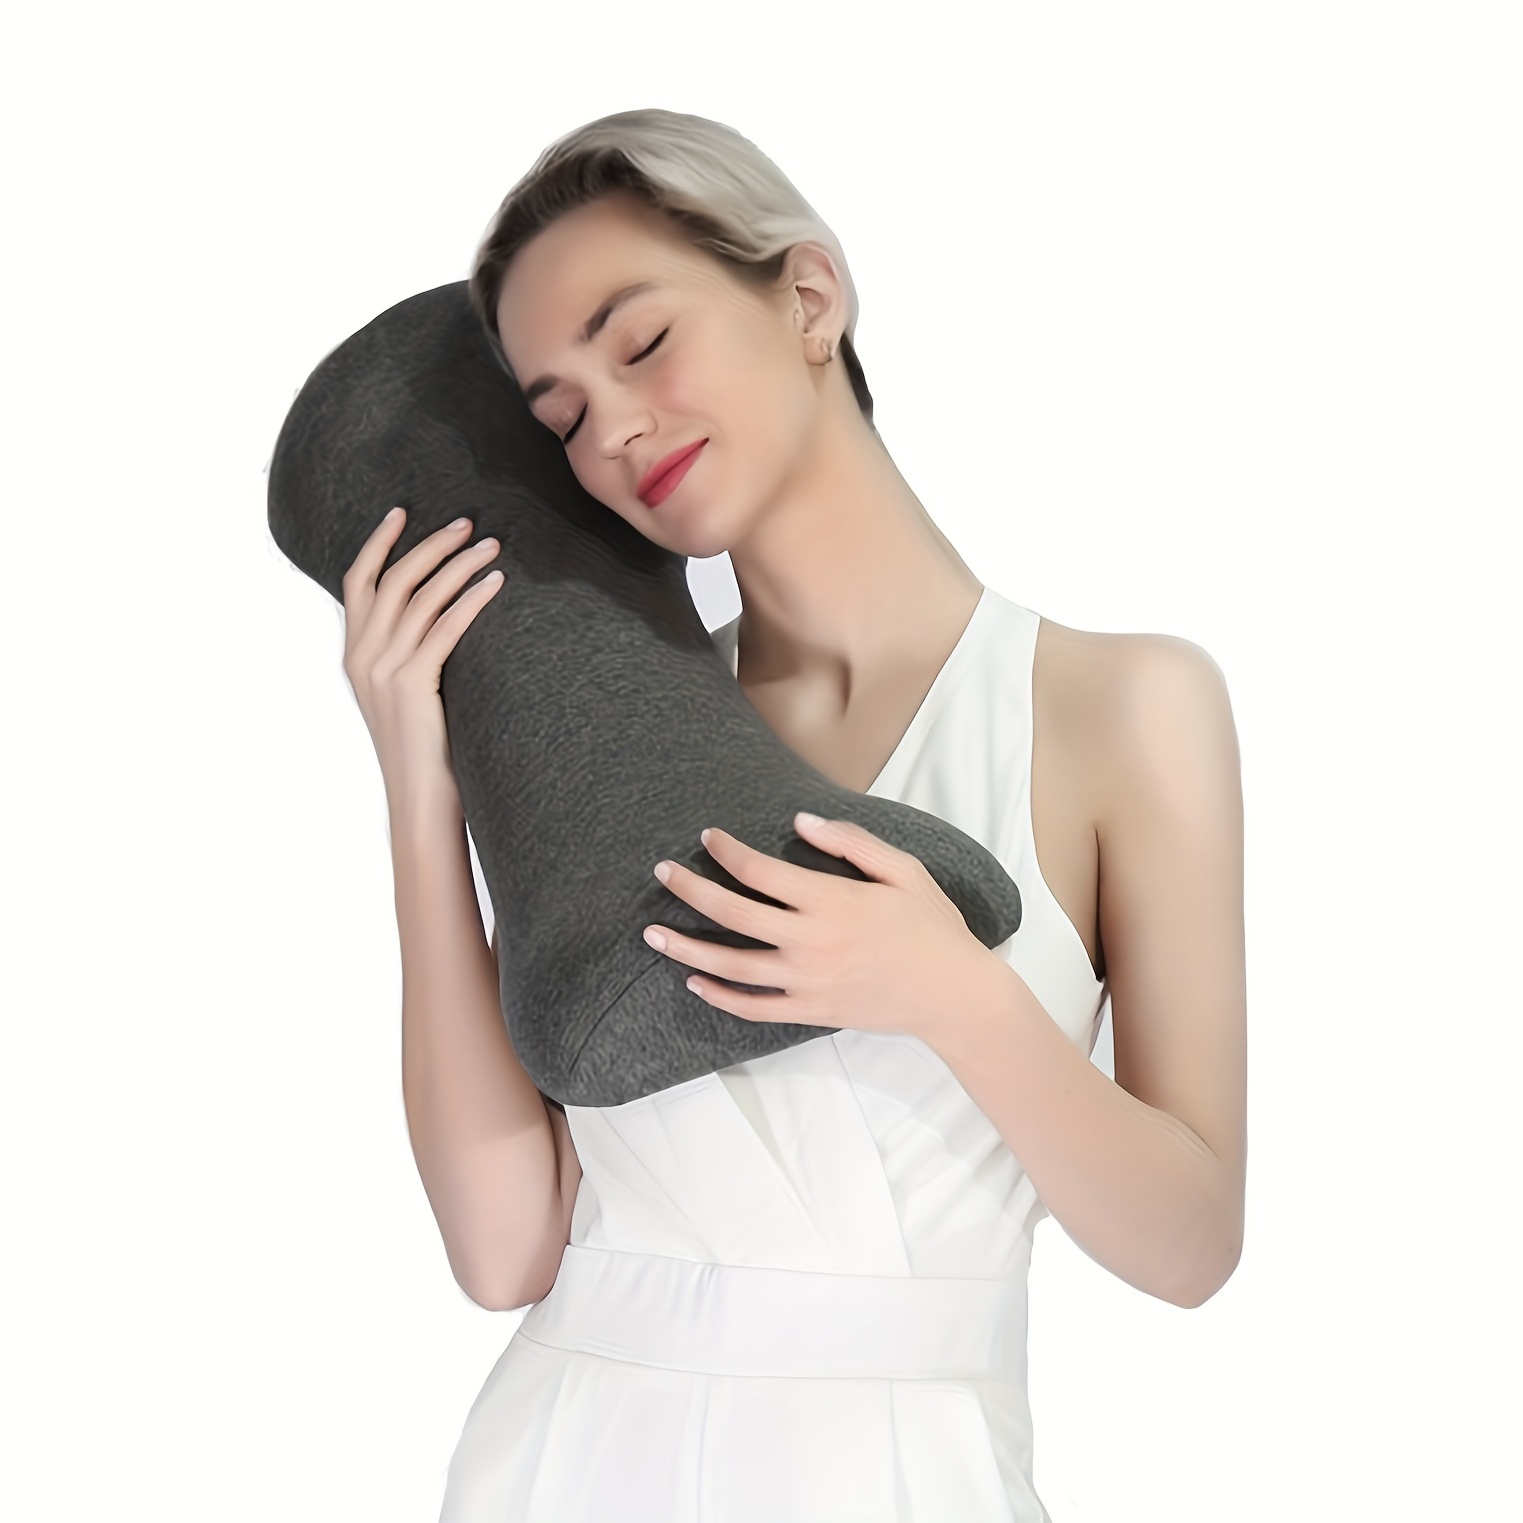 Lumbar Support Pillow Protects Lumbar Spine Sleep Aid - Temu